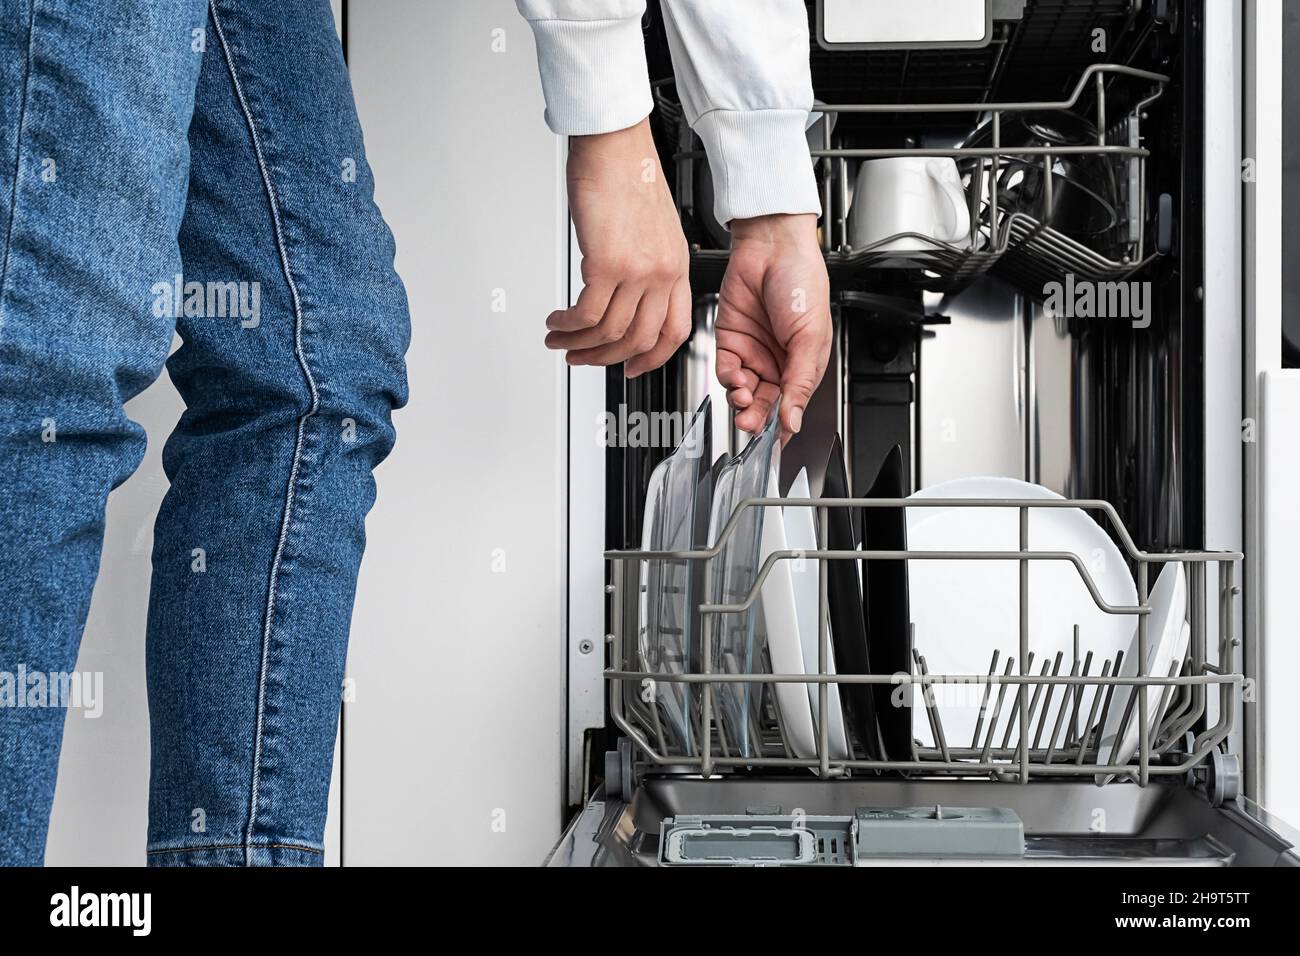 Frau macht Geschirr in der Spülmaschine zu Hause. Reinigen Sie die Teller nach dem Waschen der modernen Küche mit Geschirrspüler. Hausarbeit. Stockfoto